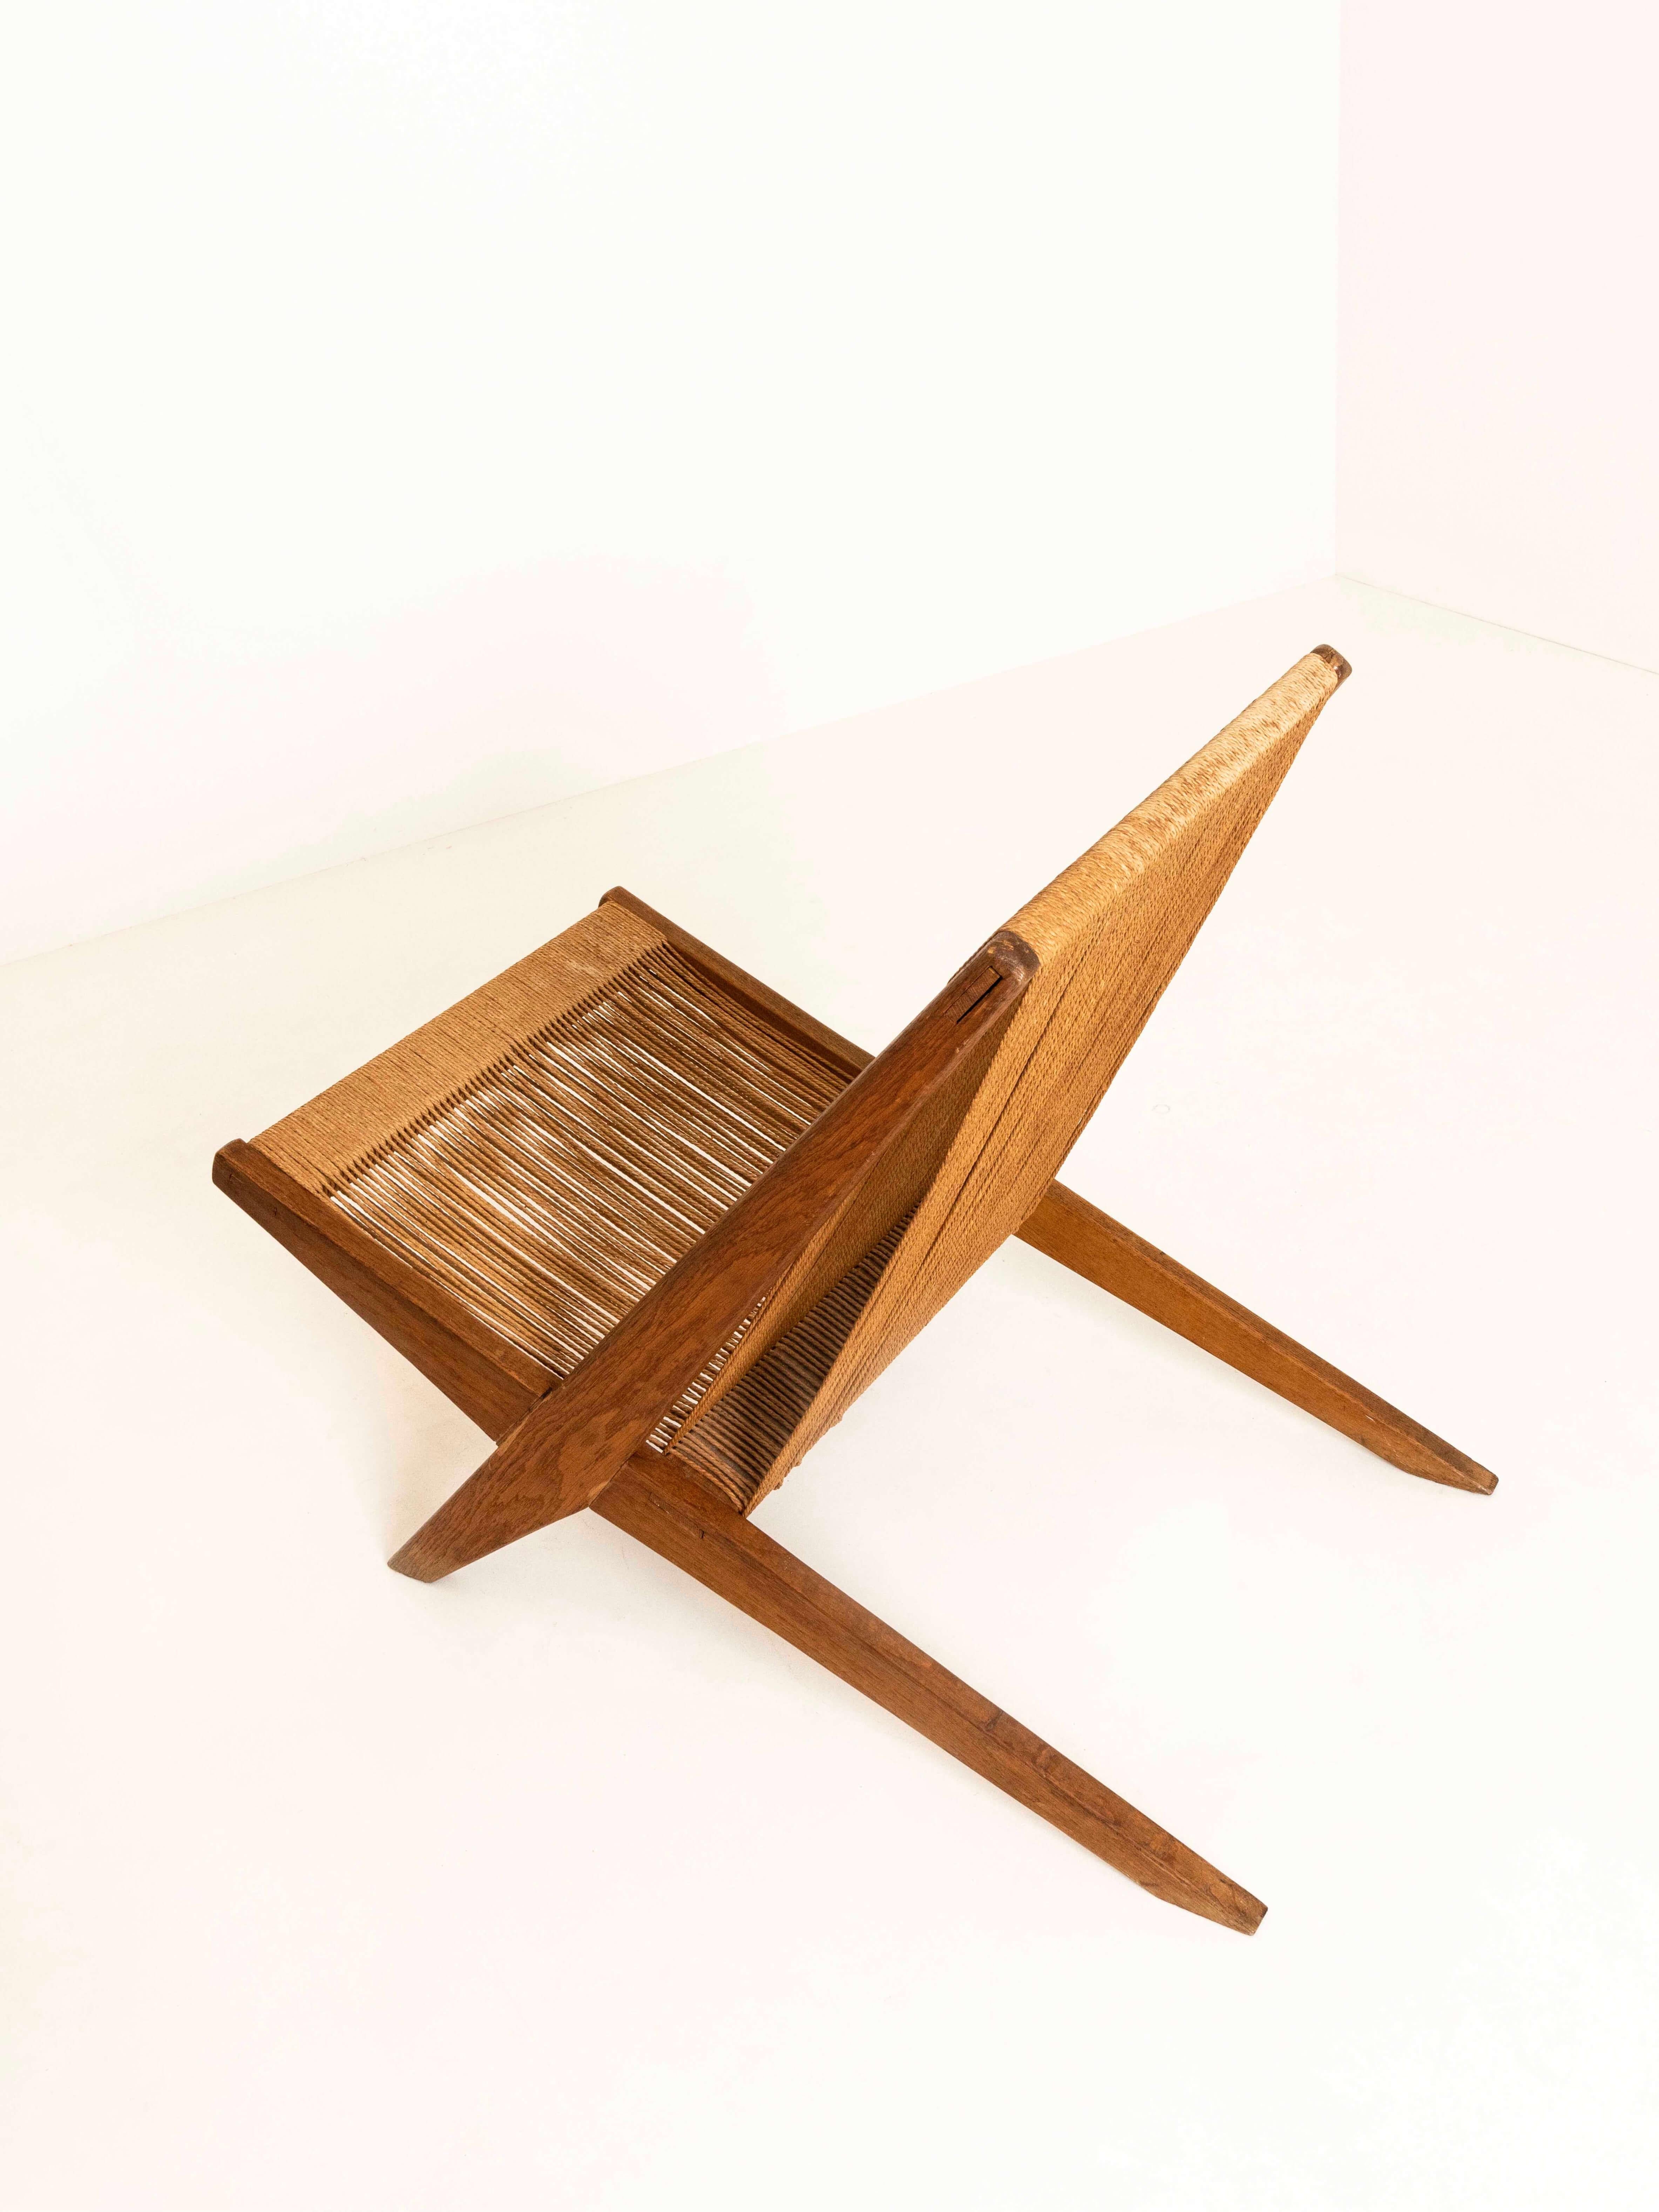 'Rope Chair' Attributed to Poul Kjaerholm and Jørgen Høj, Denmark, 1960s 1